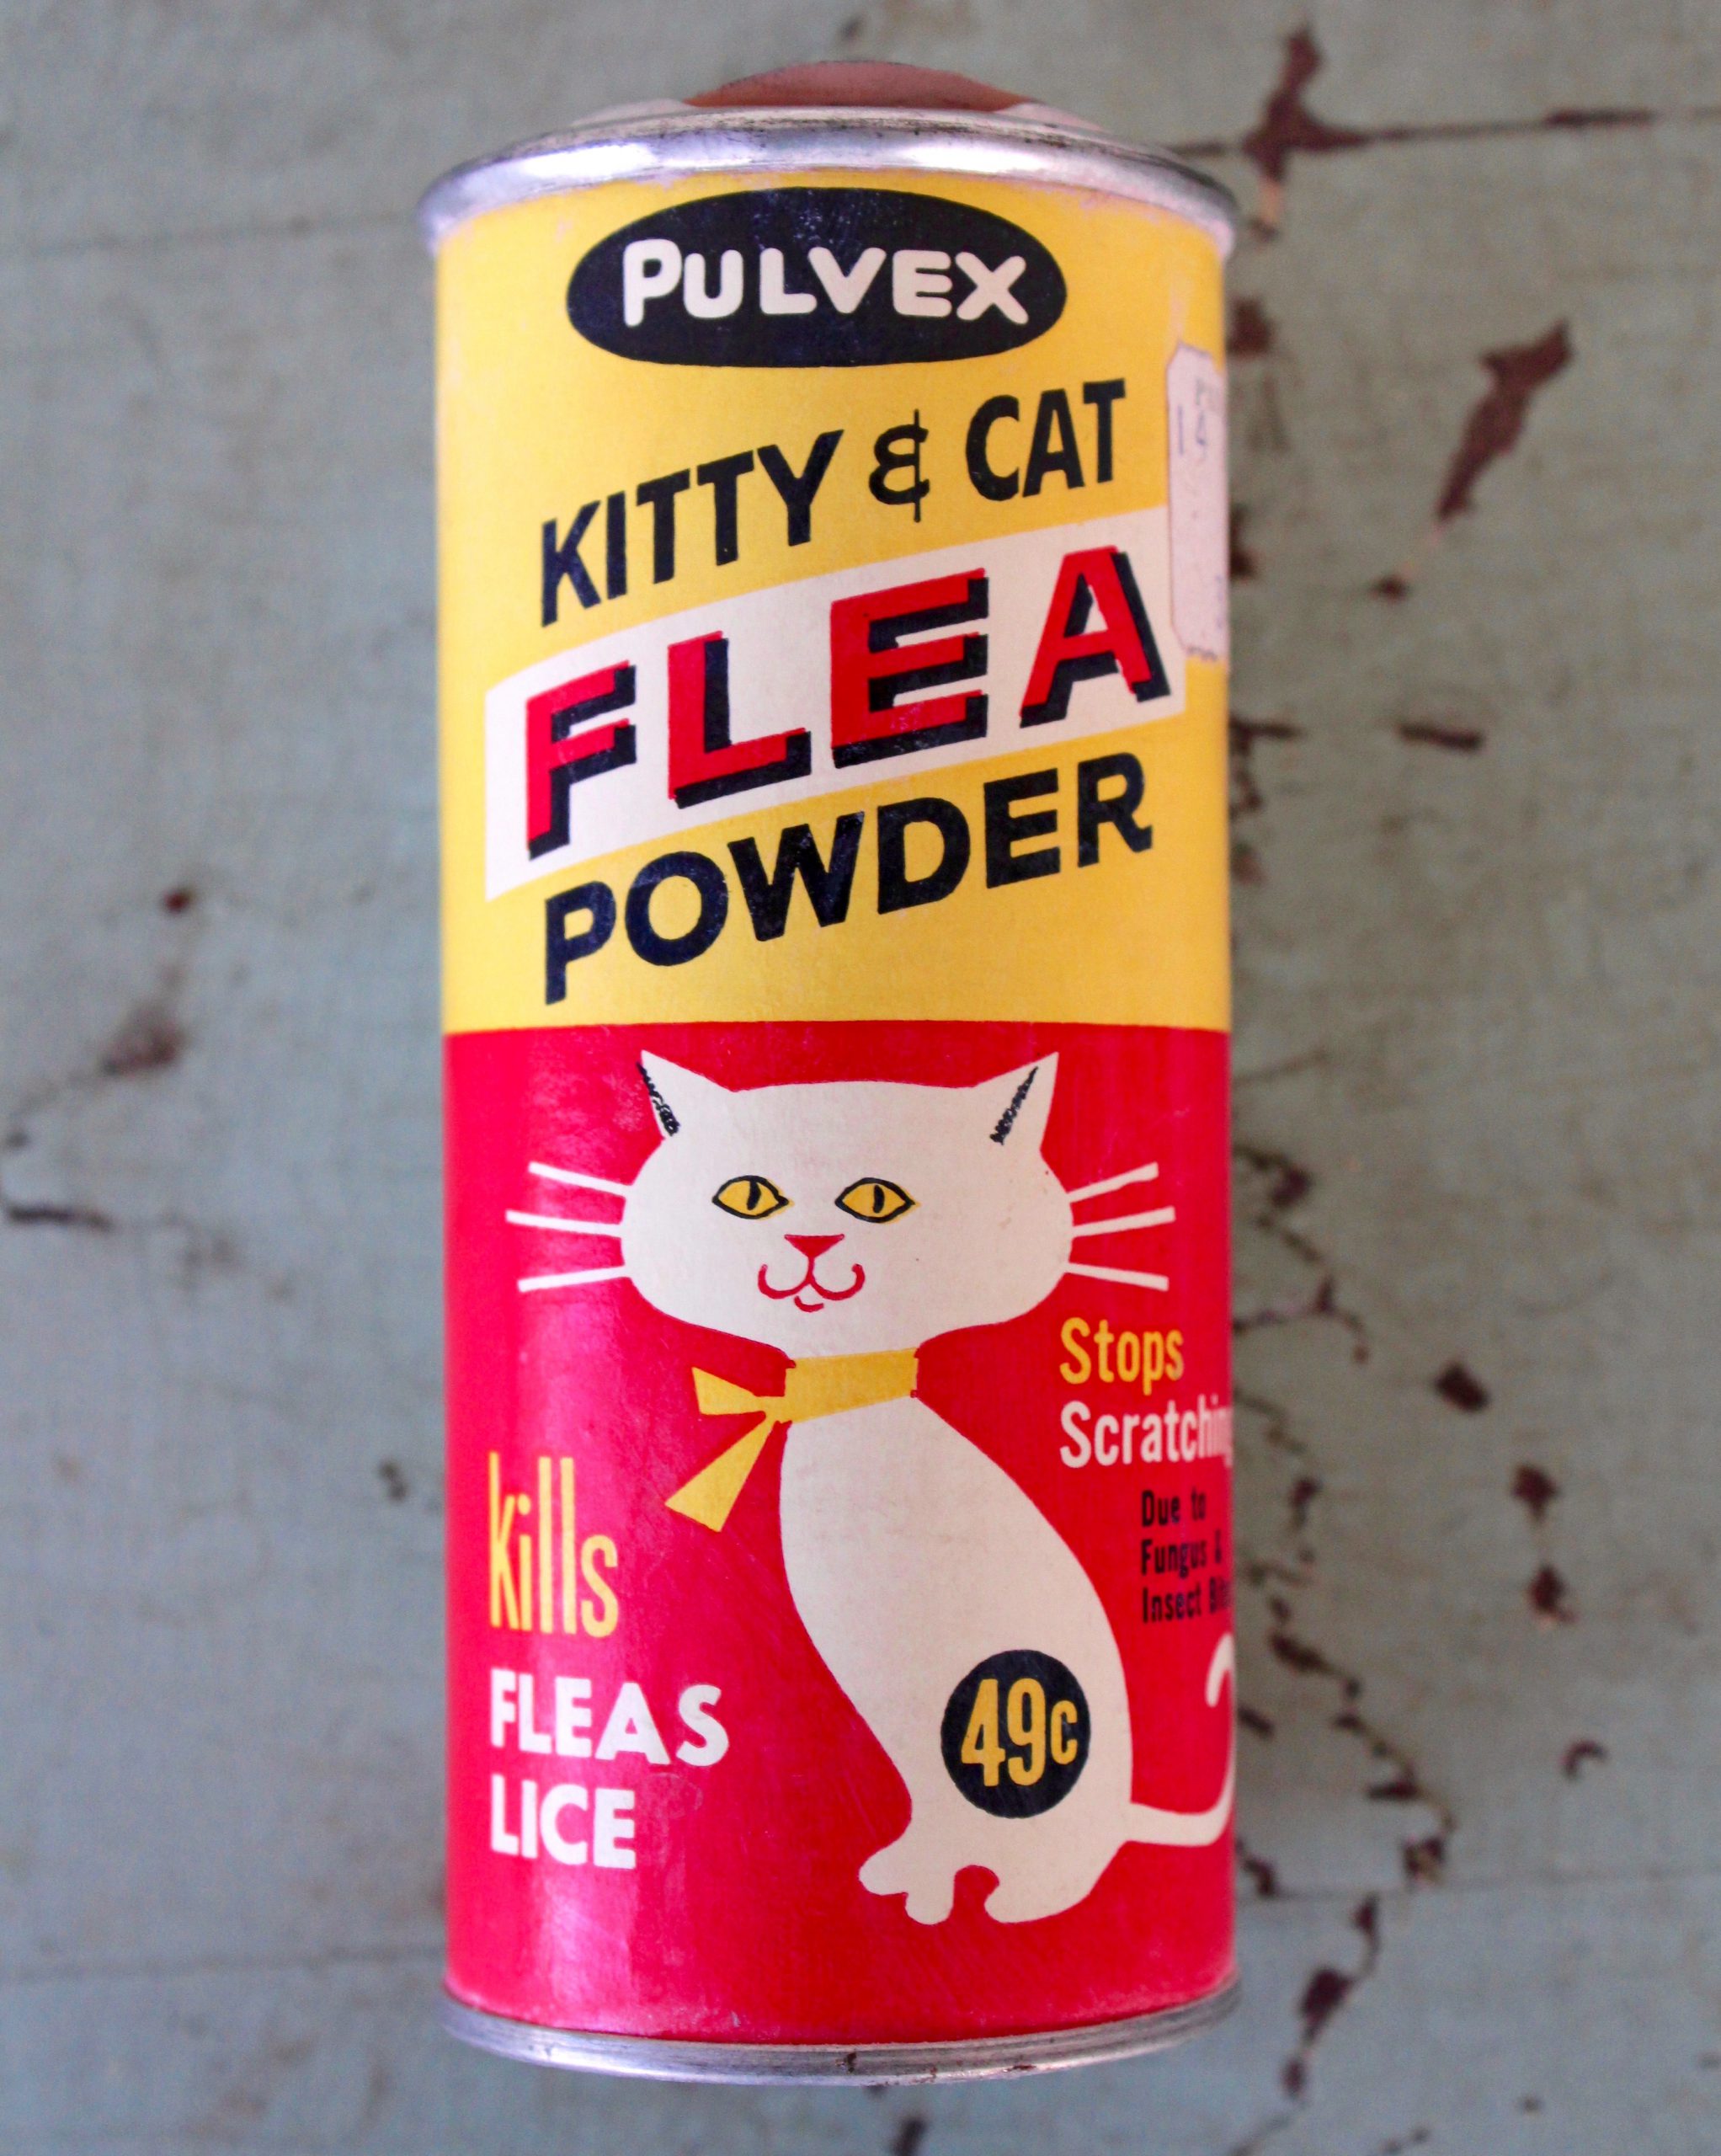 Pulvex Kitty & Cat Flea Powder